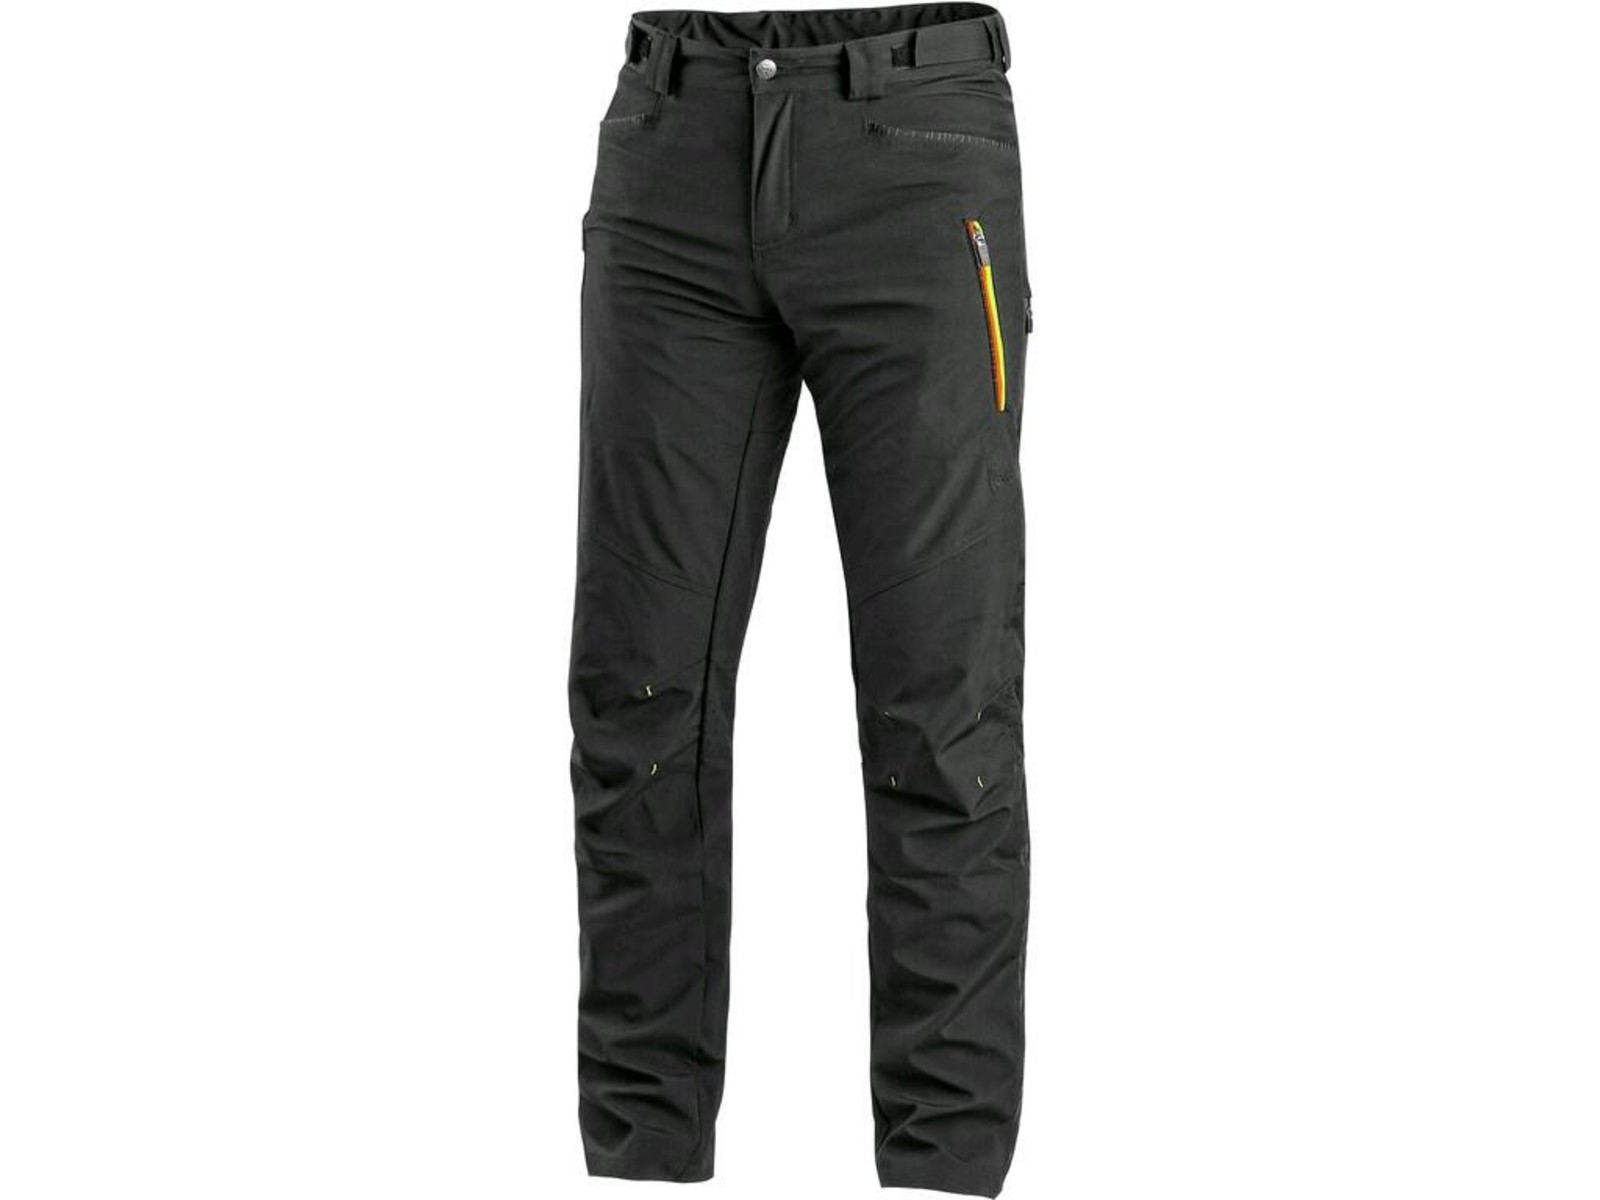 Pánske softshellové nohavice CXS Akron - veľkosť: 48, farba: čierna/žltá